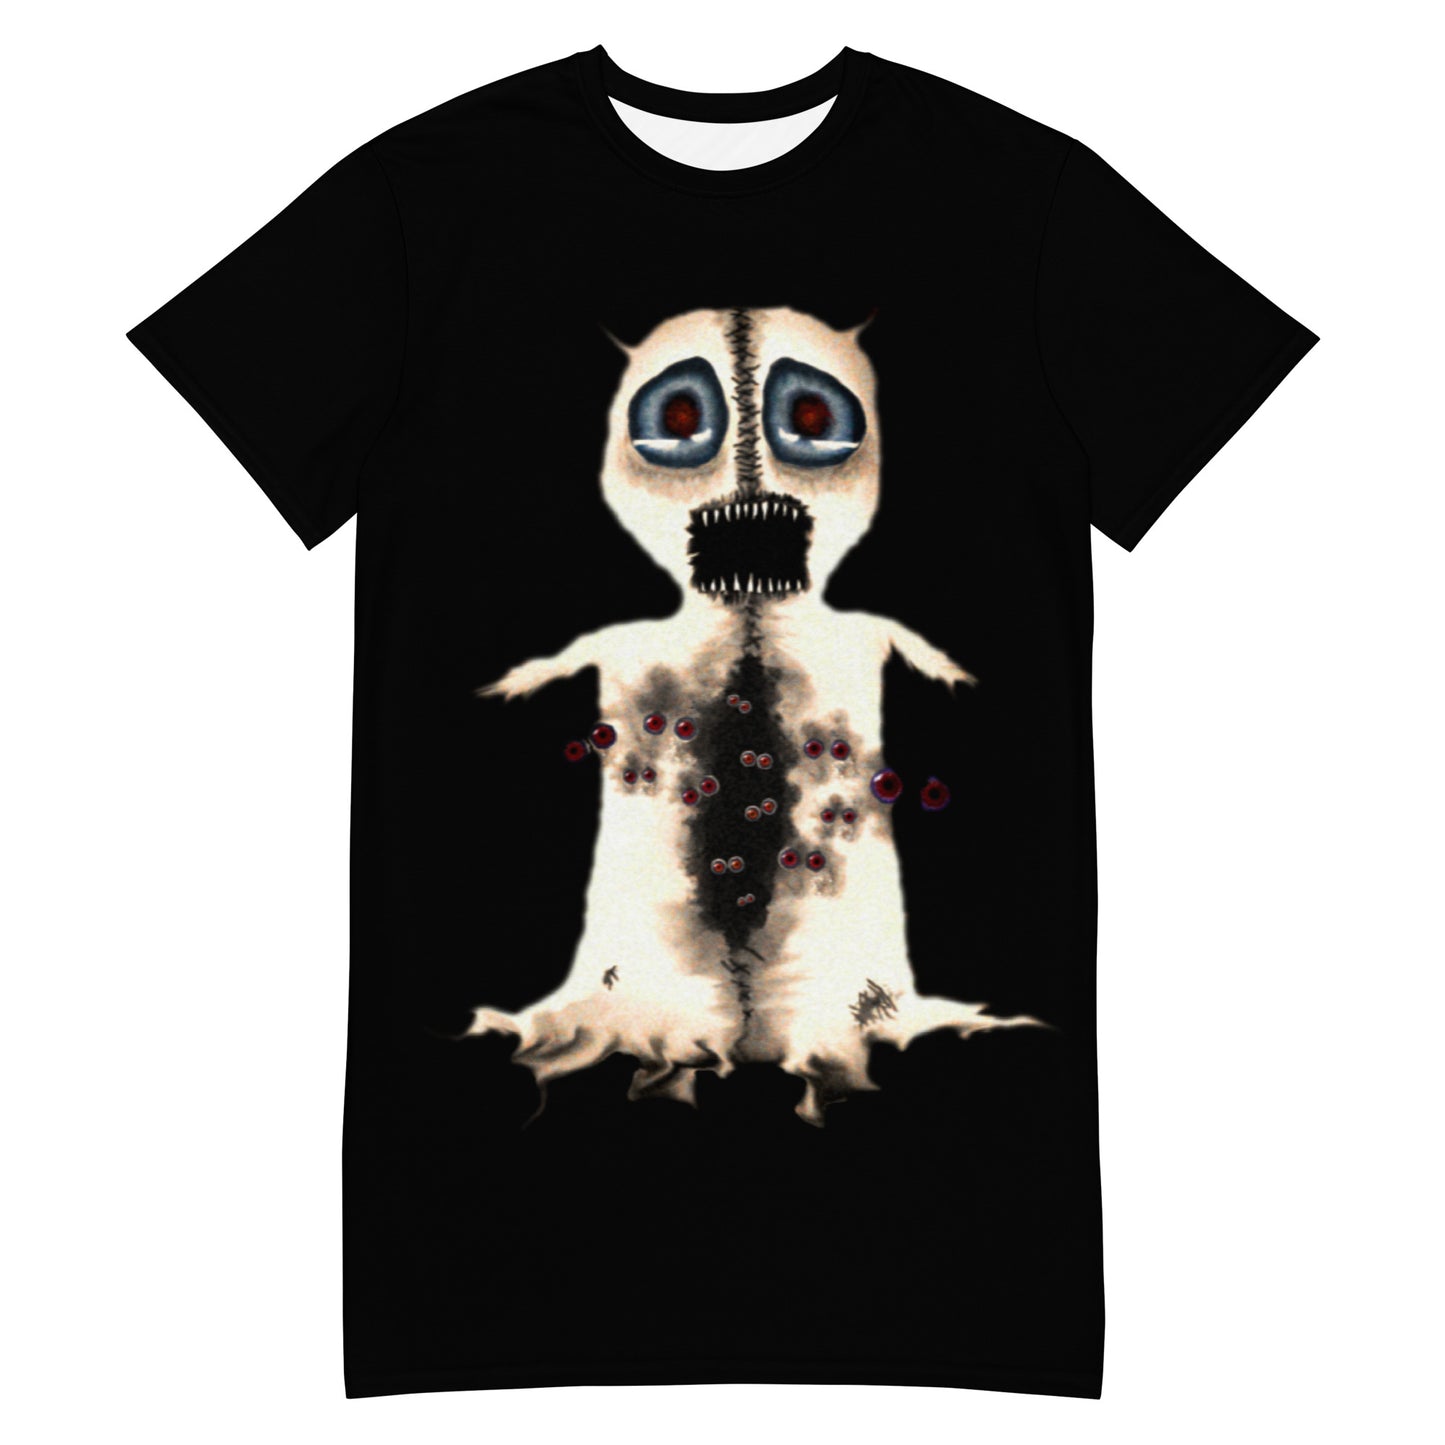 Devilghost T-shirt dress – Online Exclusive